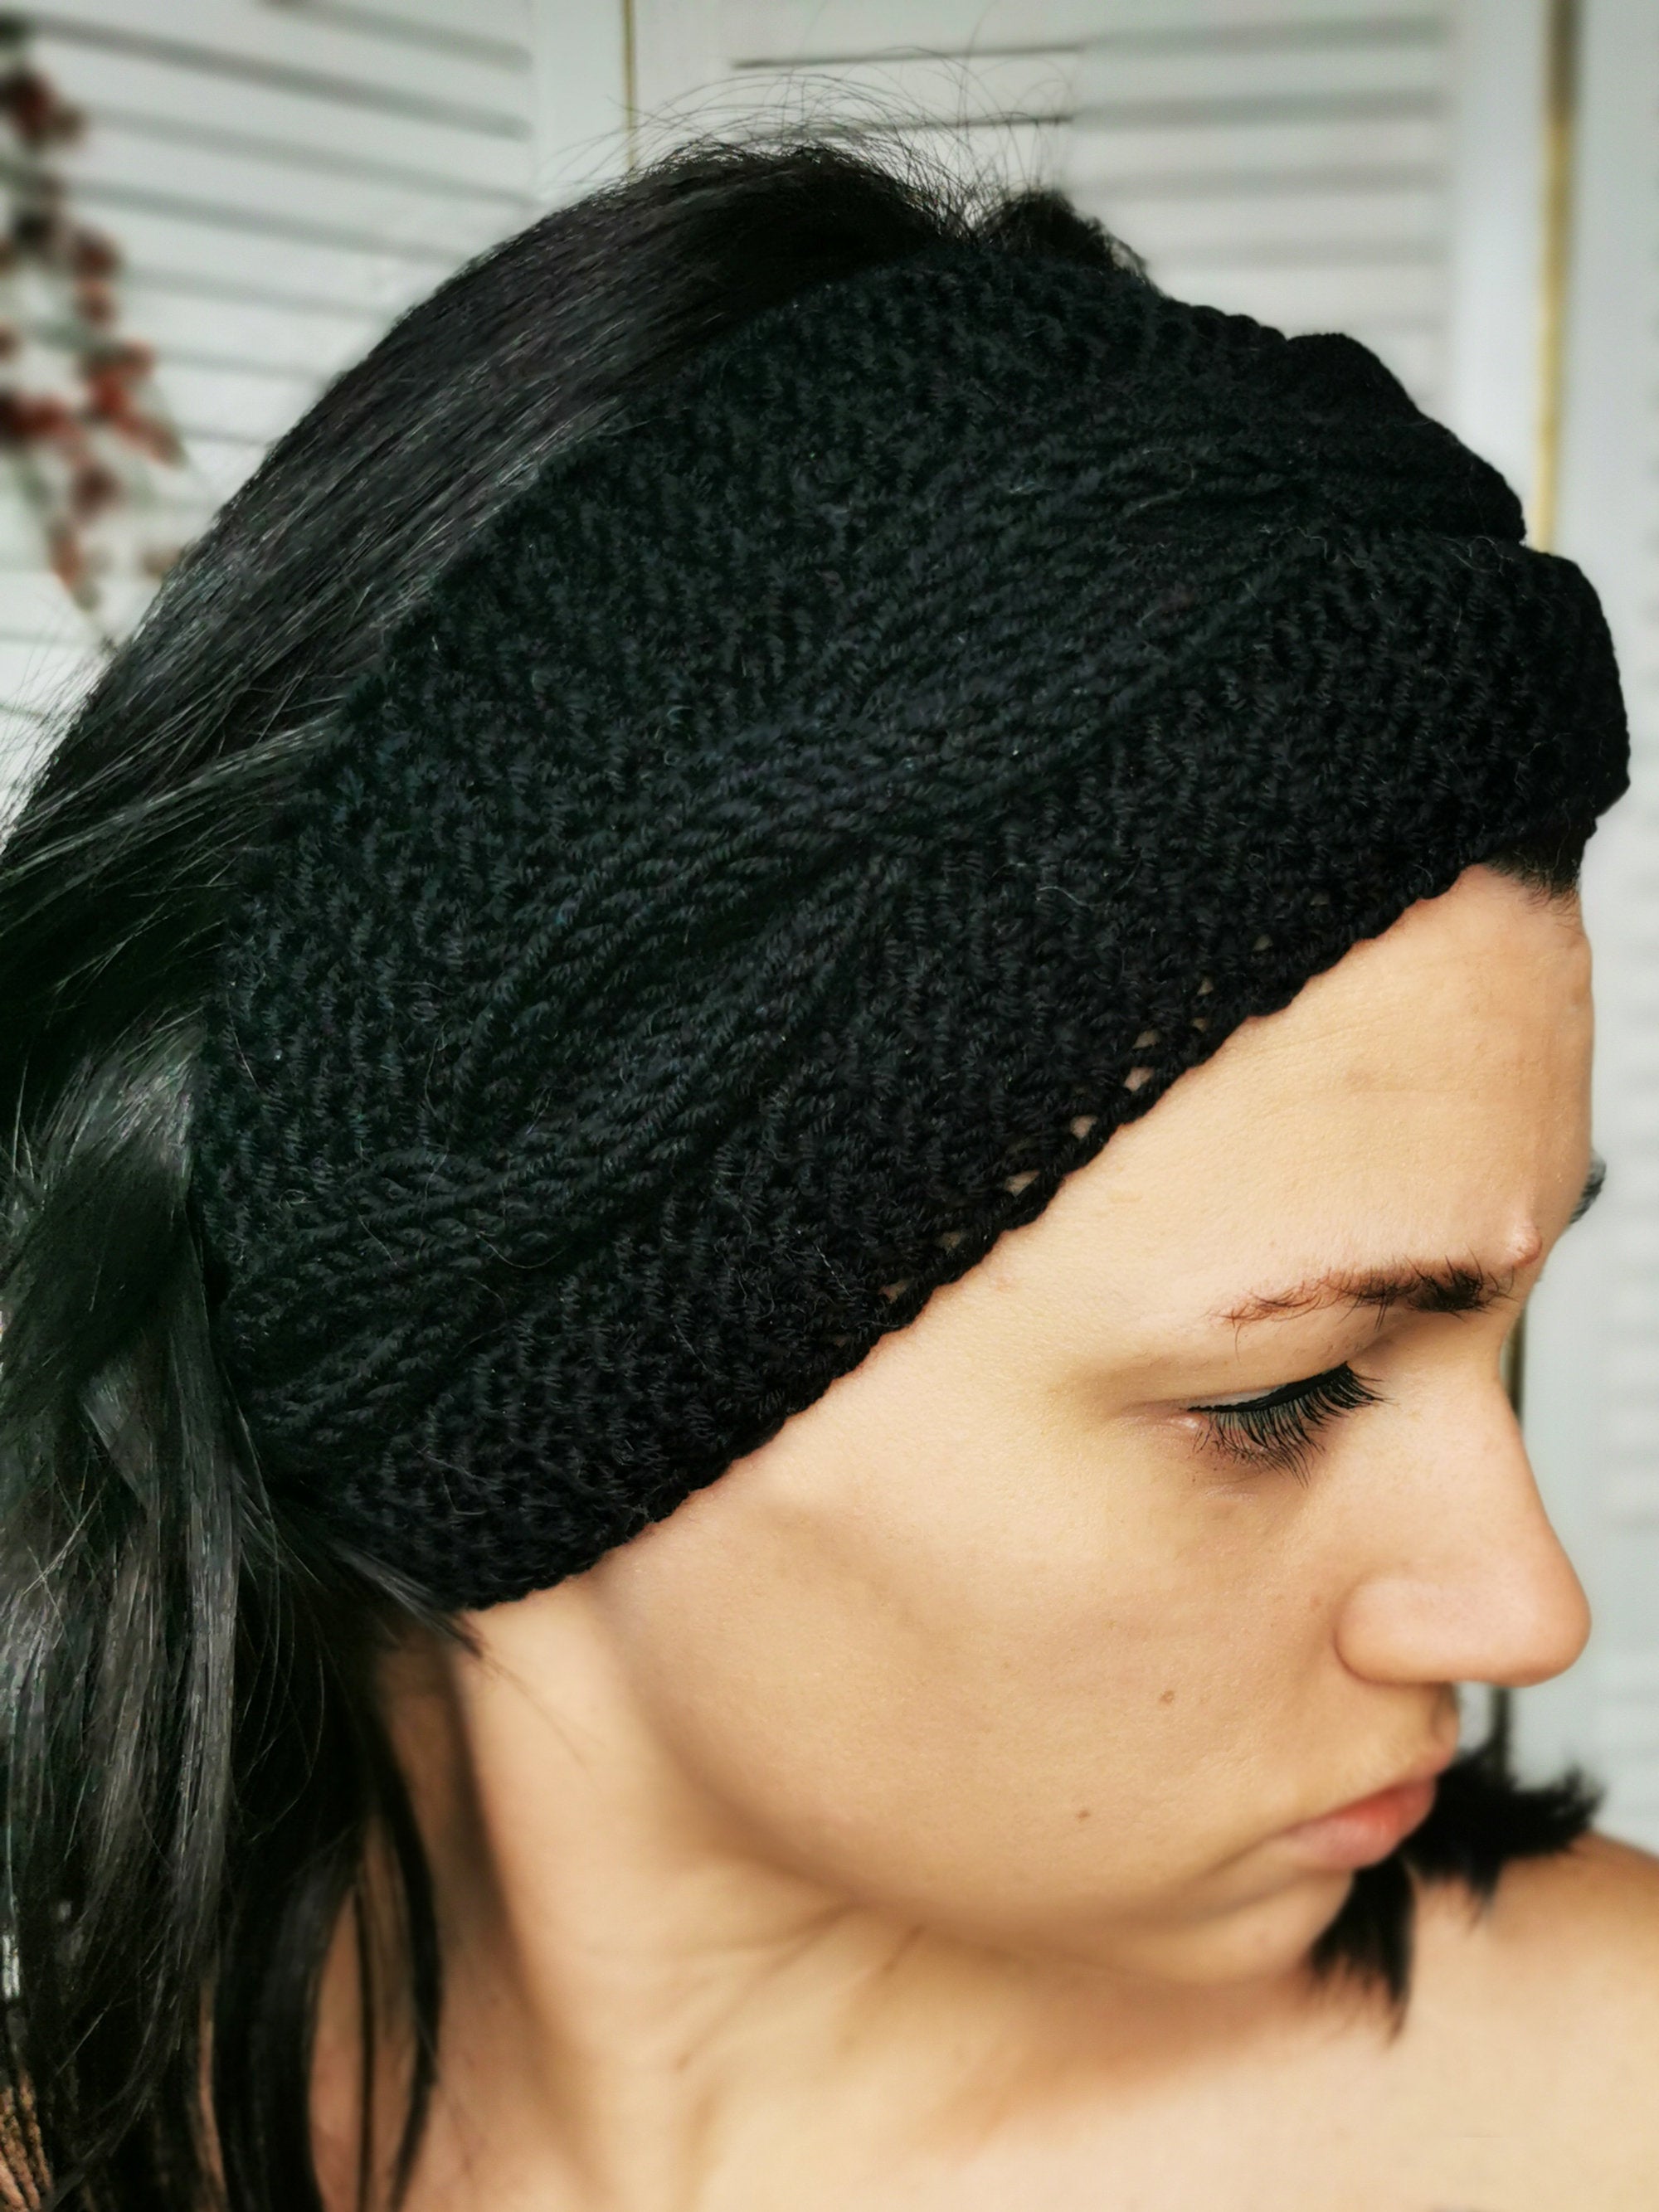 Merino wool handmade knitted winter headband in black